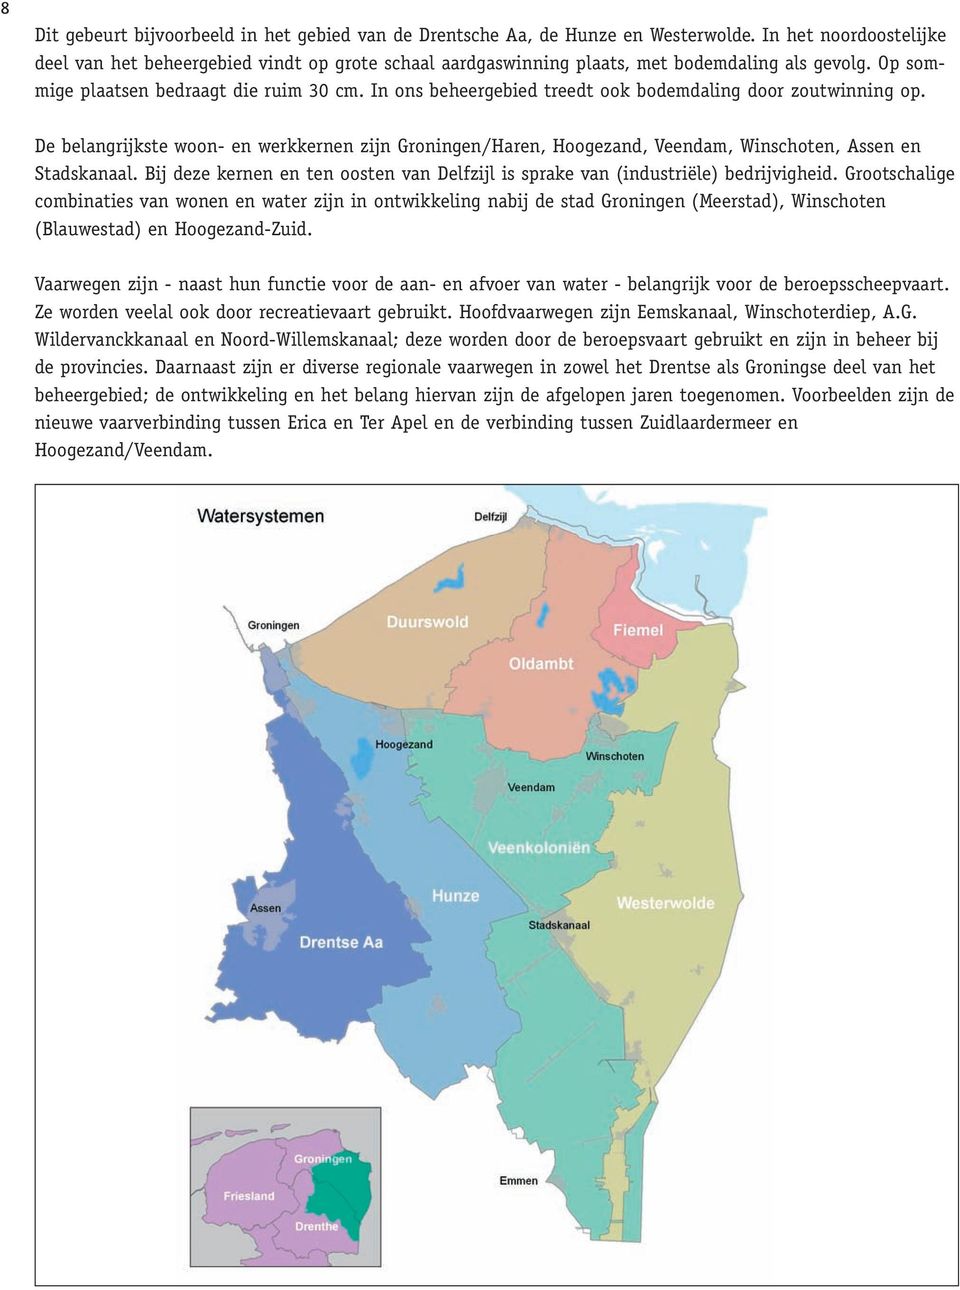 In ons beheergebied treedt ook bodemdaling door zoutwinning op. De belangrijkste woon- en werkkernen zijn Groningen/Haren, Hoogezand, Veendam, Winschoten, Assen en Stadskanaal.